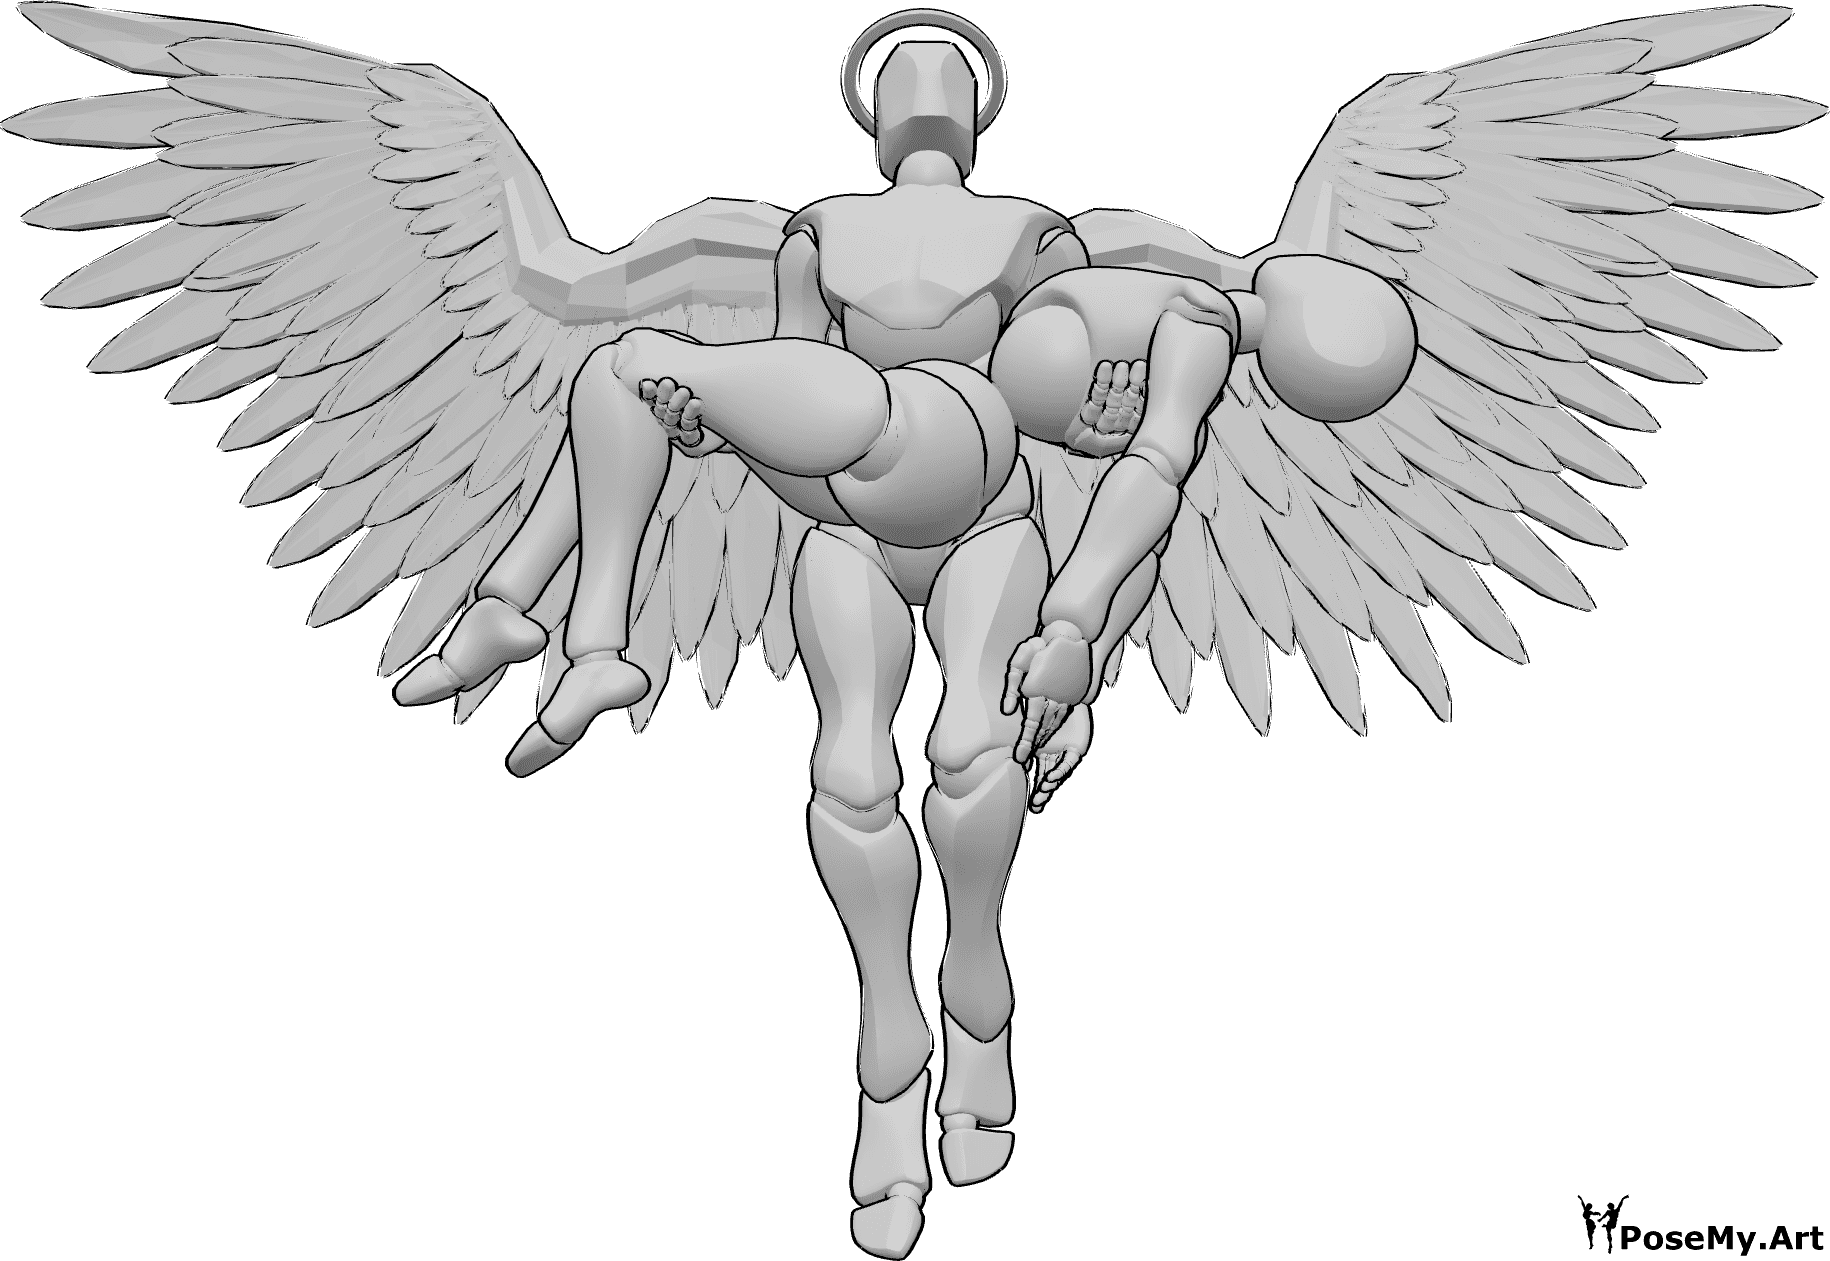 Riferimento alle pose- Angelo in posa femminile - Un angelo maschio tiene una femmina con due mani e vola verso l'alto